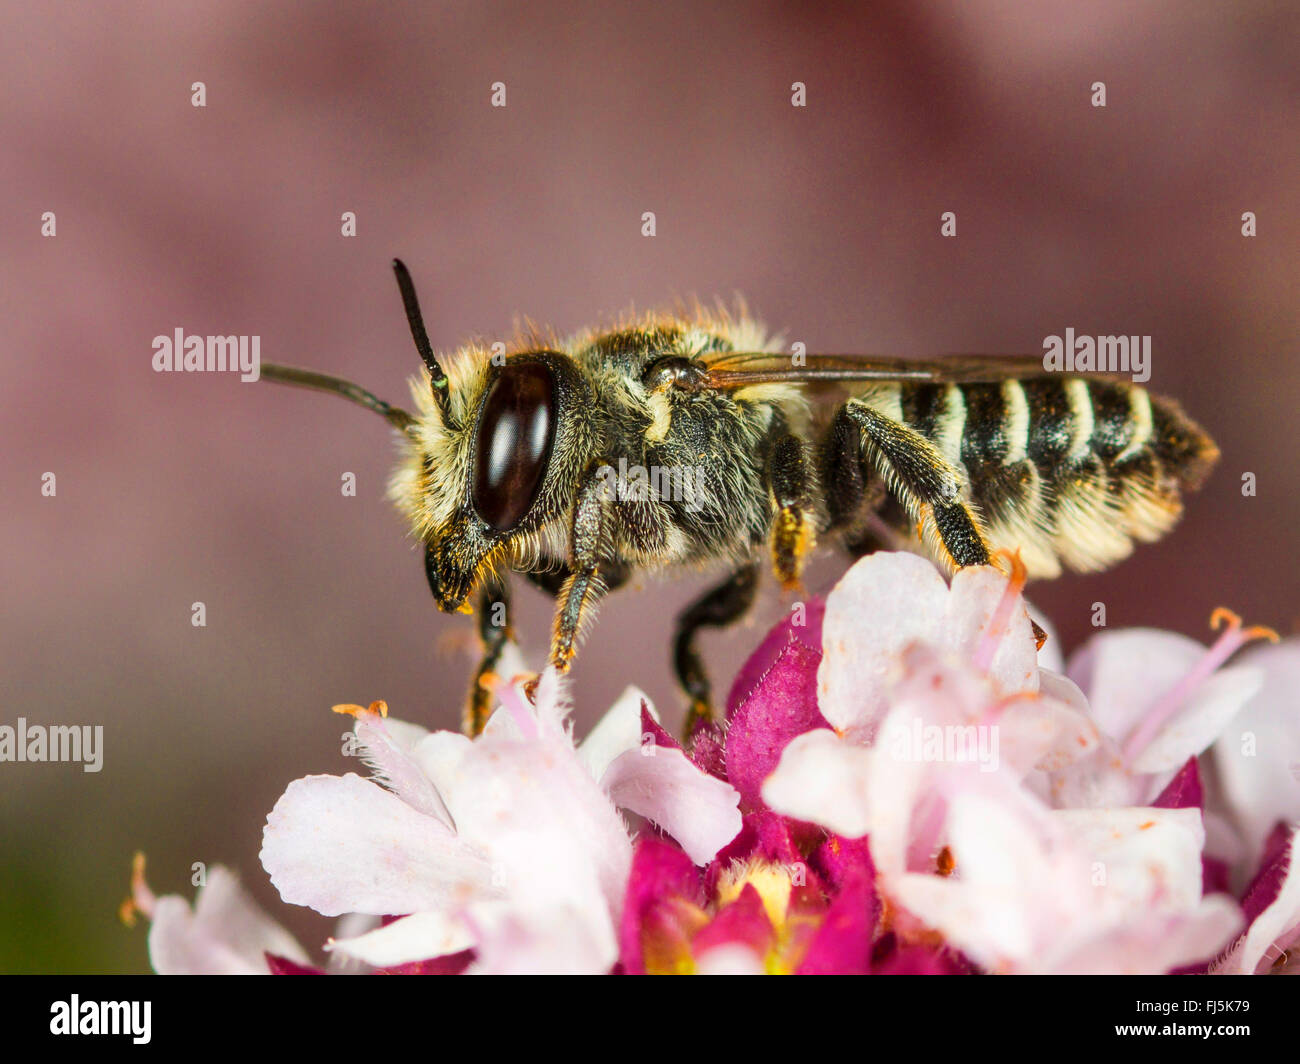 L'abeille découpeuse de la luzerne (Megachile rotundata), femme qui se nourrissent de l'origan (Origanum vulgare), Allemagne Banque D'Images